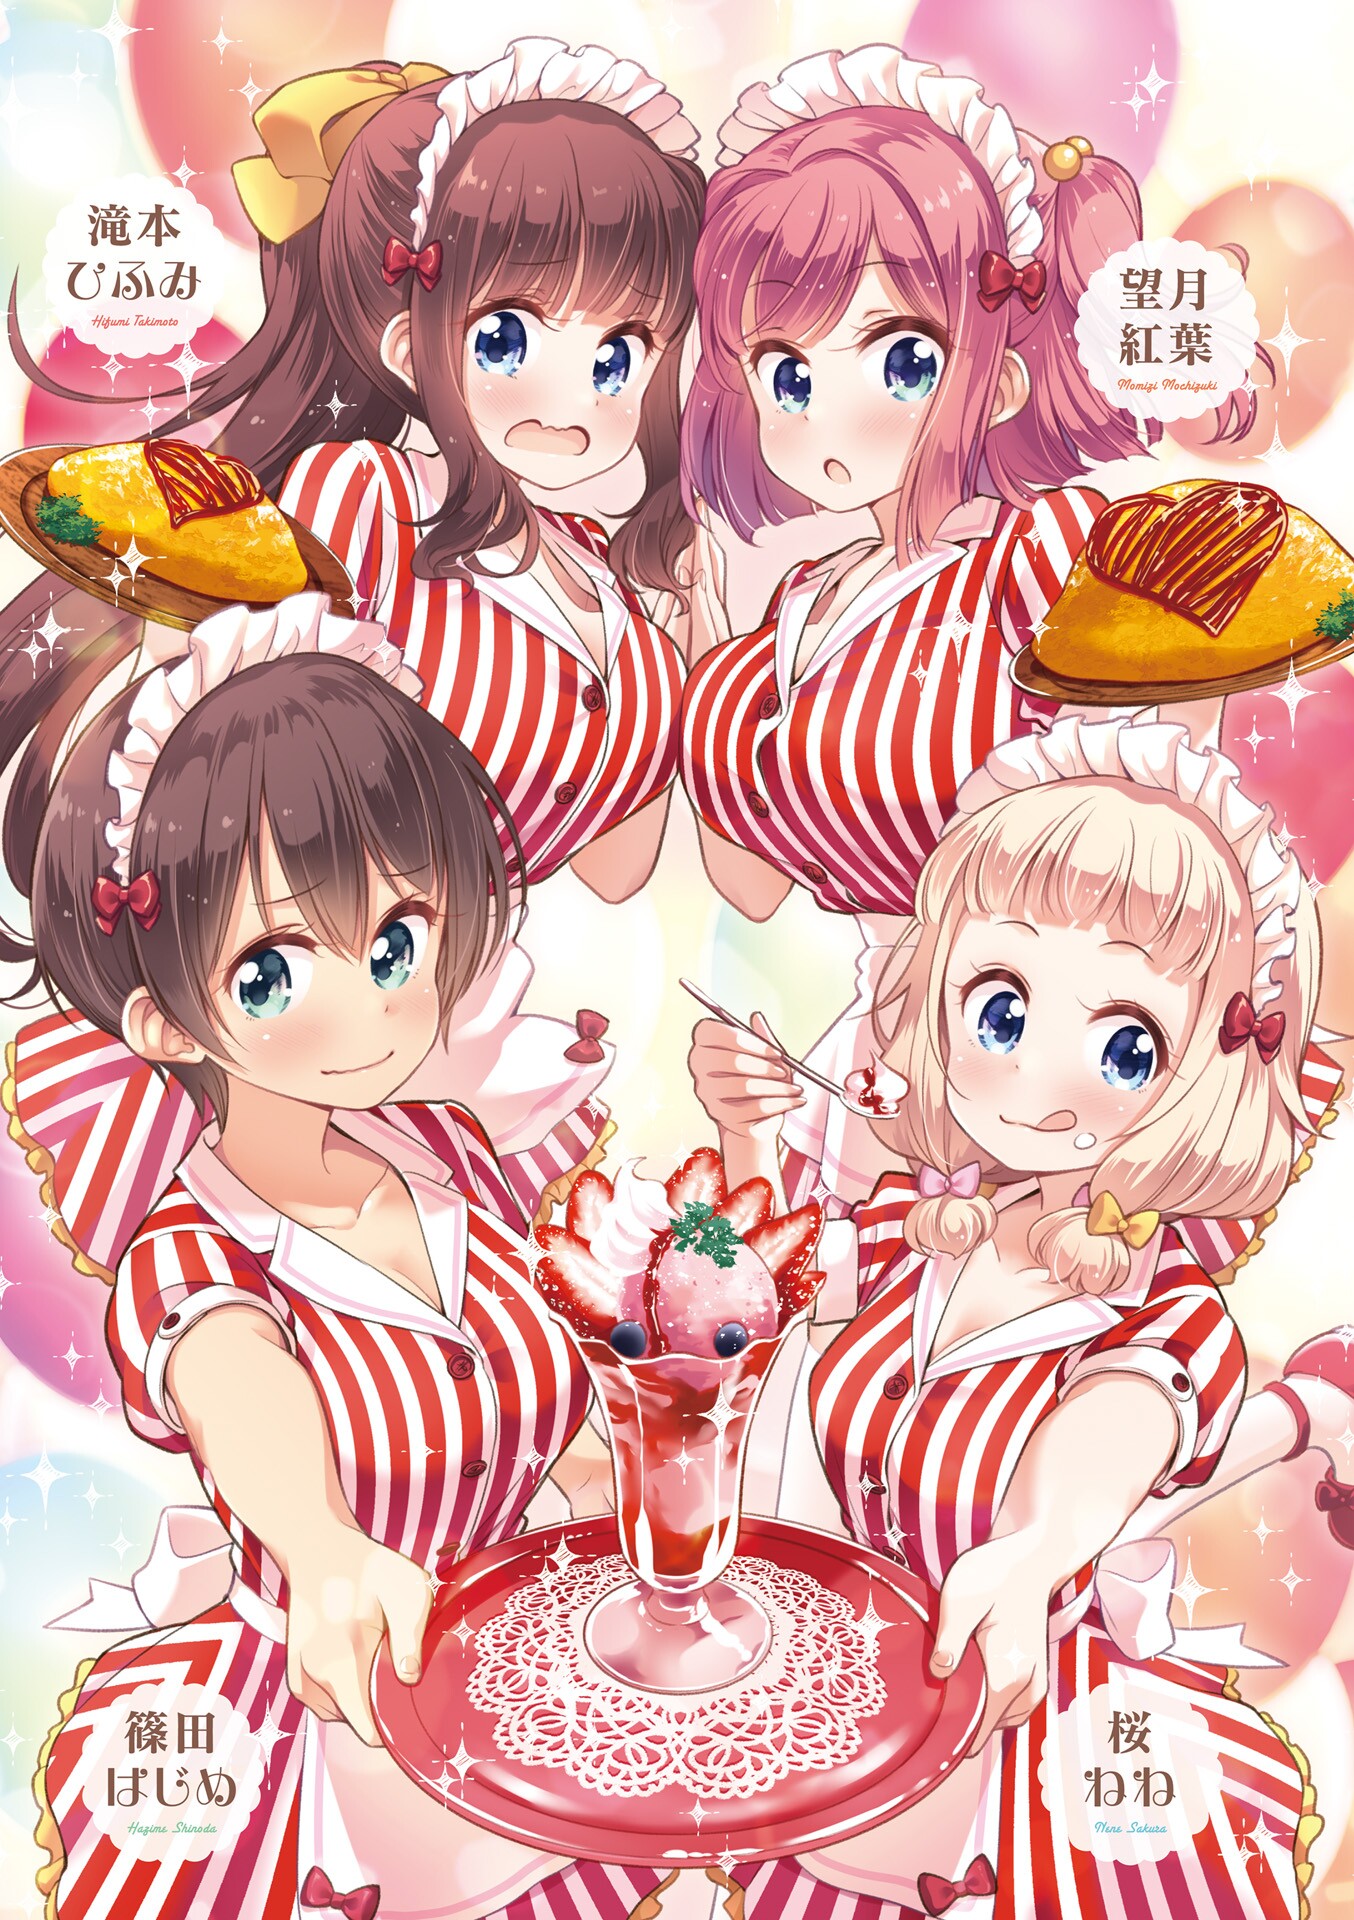 Tokunou Shoutarou New Game Mochizuki Momiji Sakura Nene Shinoda Hajime Takimoto Hifumi Cleavage Maid Waitress Yande Re